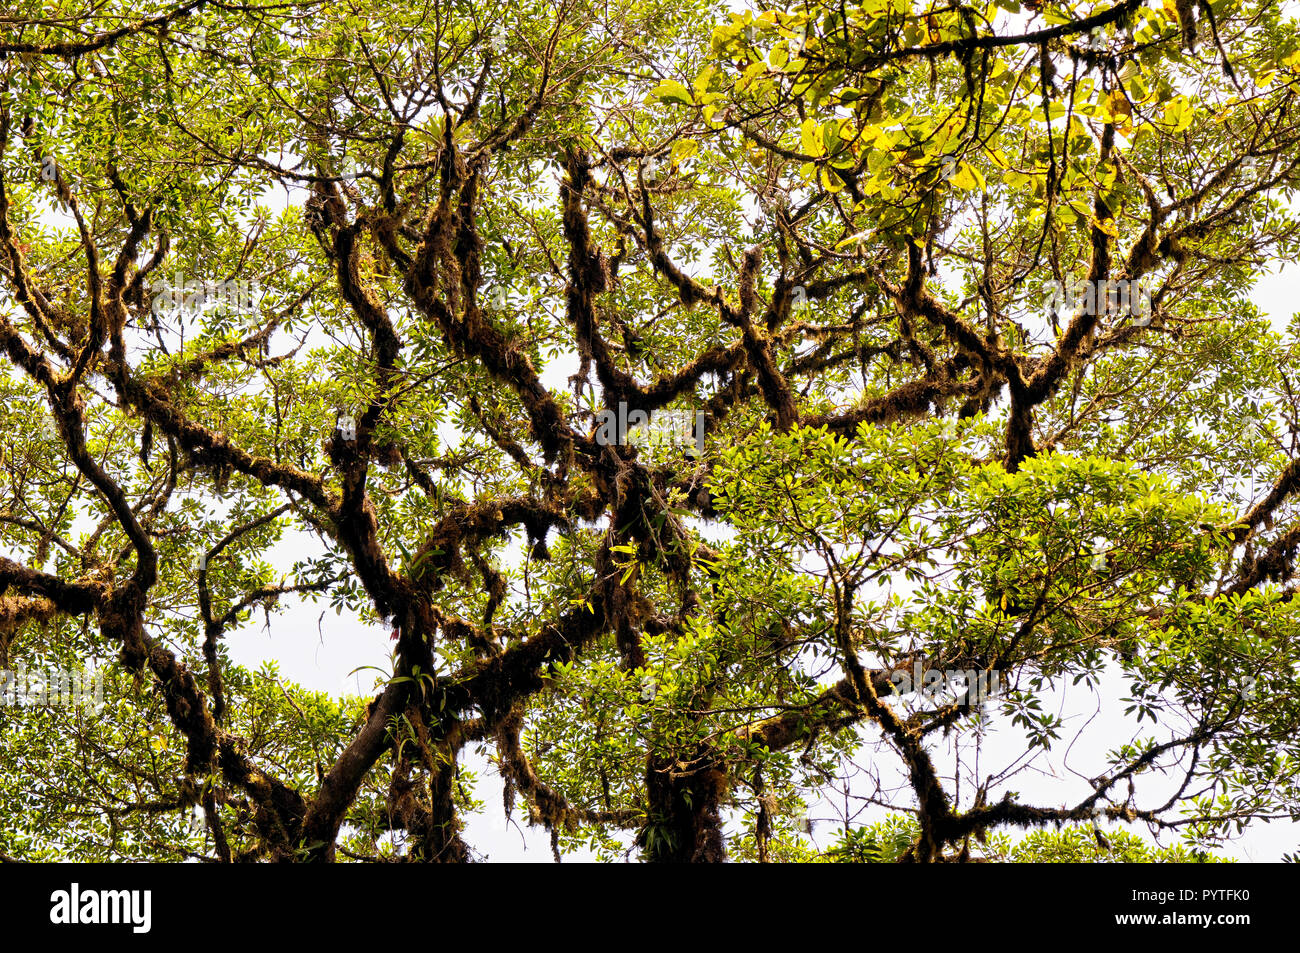 Die Krone einer beherrschenden tropischer Baum mit Flechten und Epiphyten (Costa Rica, Monteverde). Stockfoto